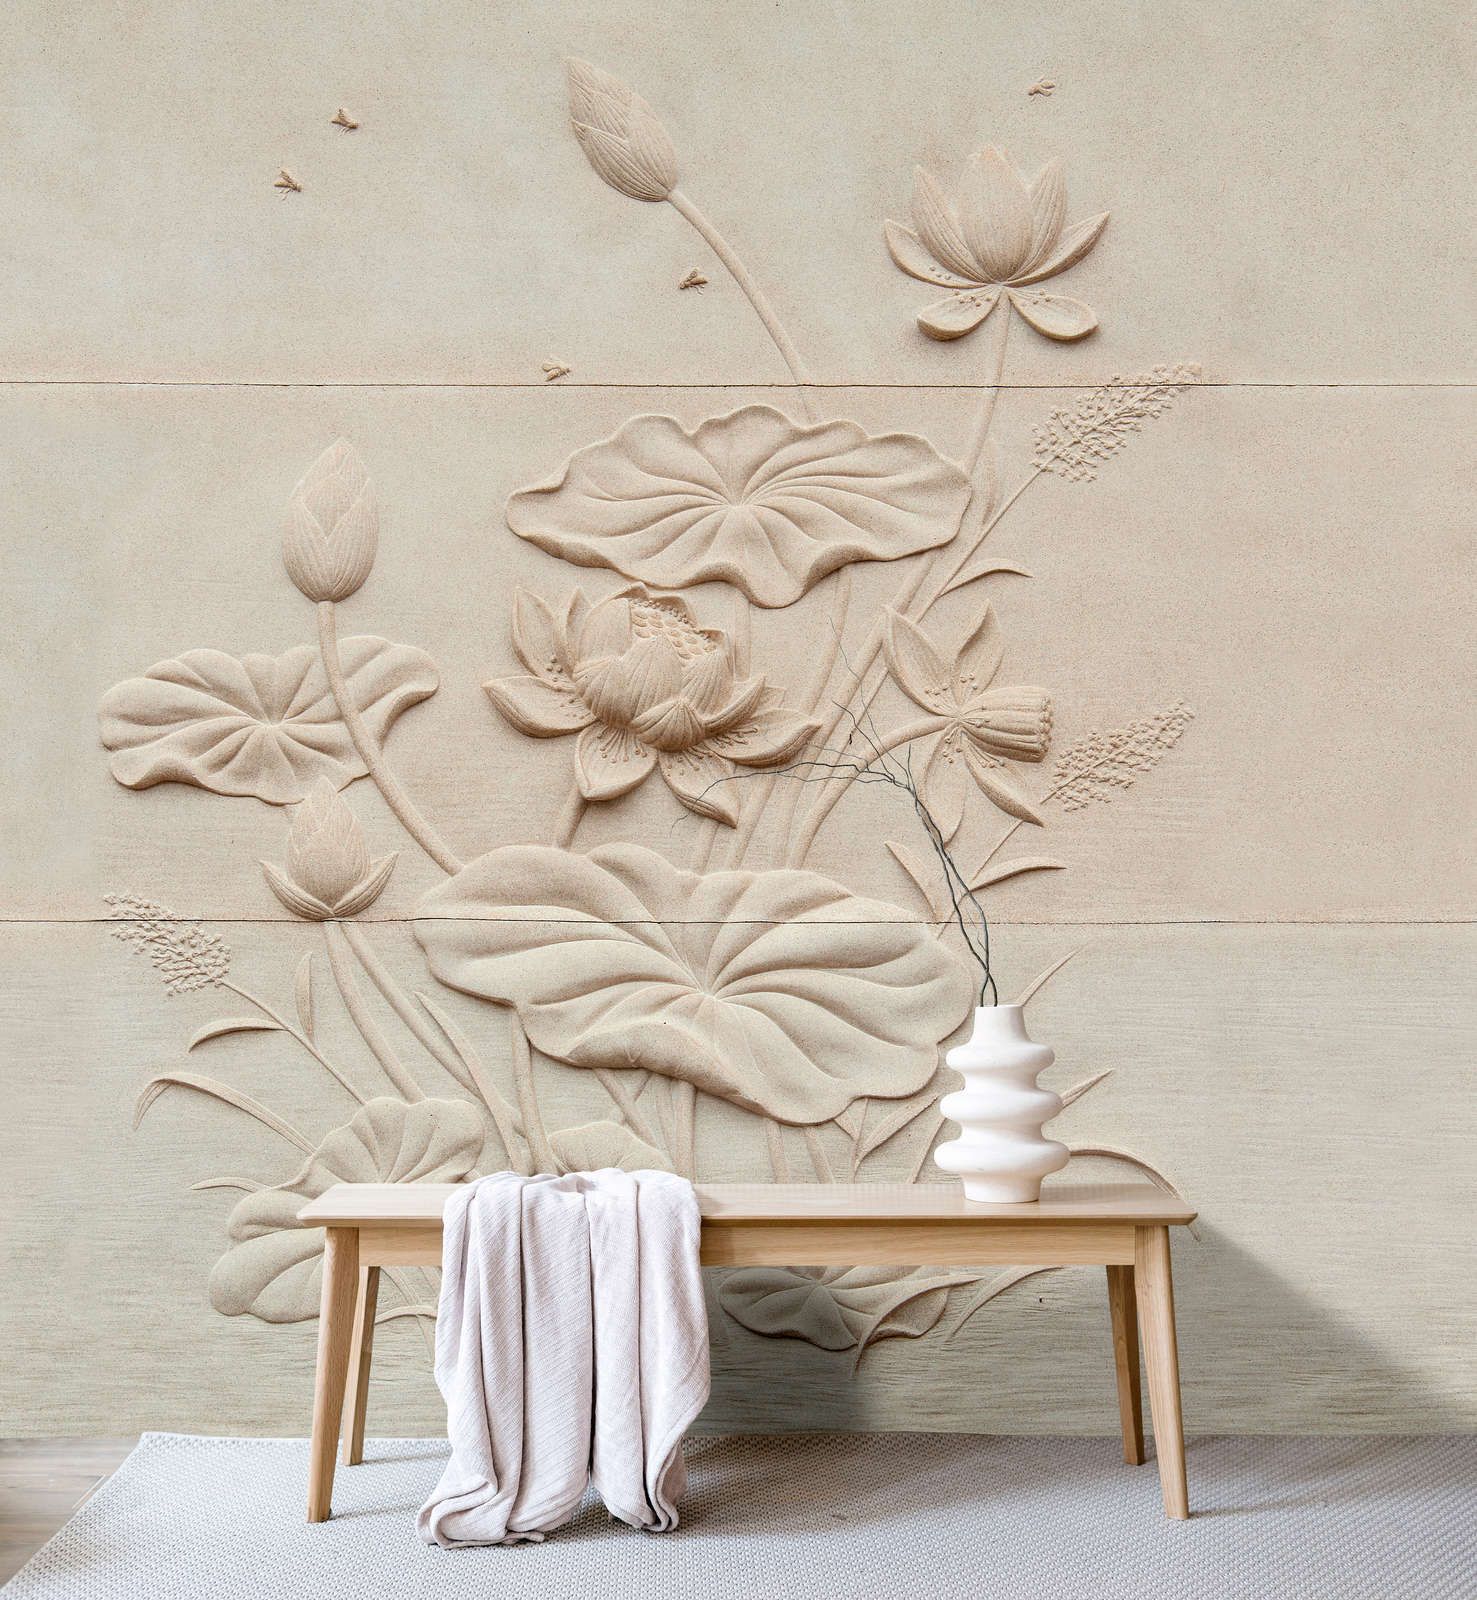             Photo wallpaper »fiore« - Floral relief on concrete structure - Matt, Smooth non-woven fabric
        